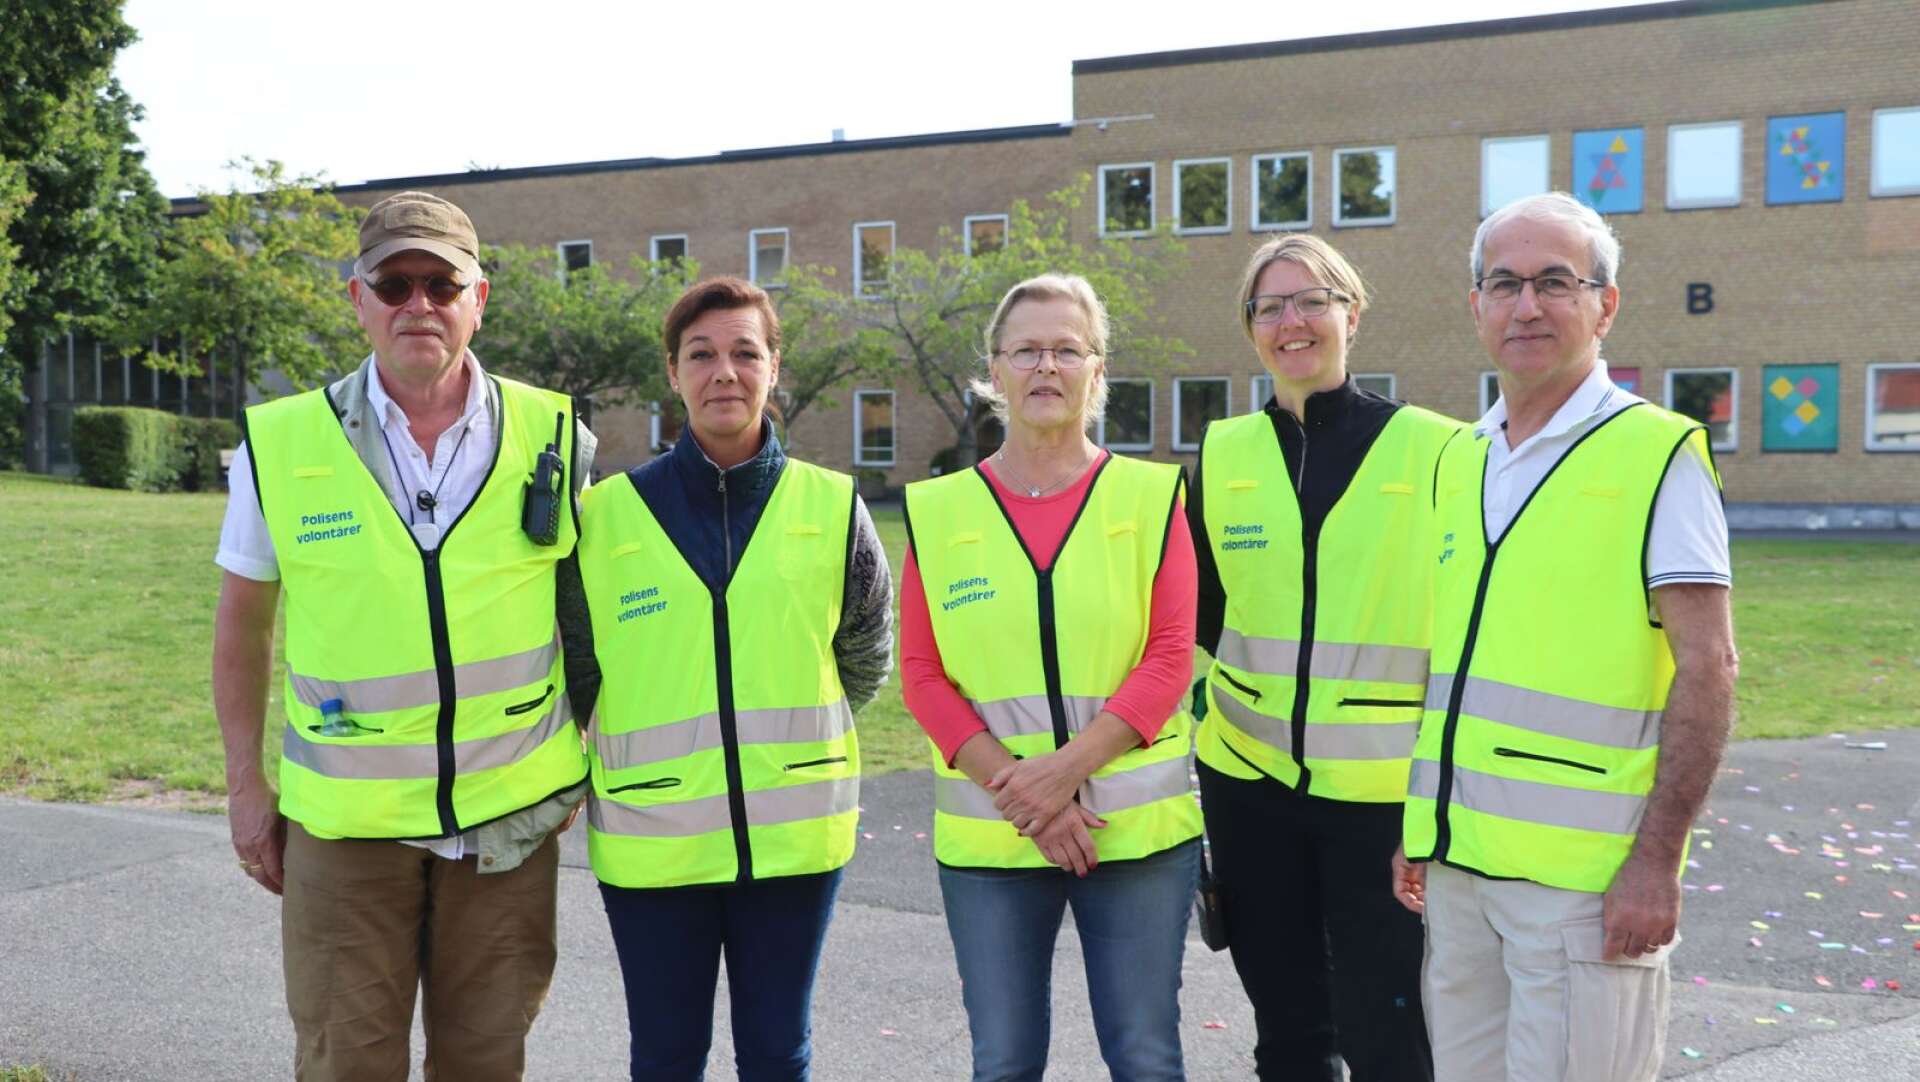 Polisens volontärer var på plats utanför skolan. Från vänster, Lennart Hultkrantz, Eva Axelsson, Eva Lindblom, Edward Shahin och Stina Nyström.